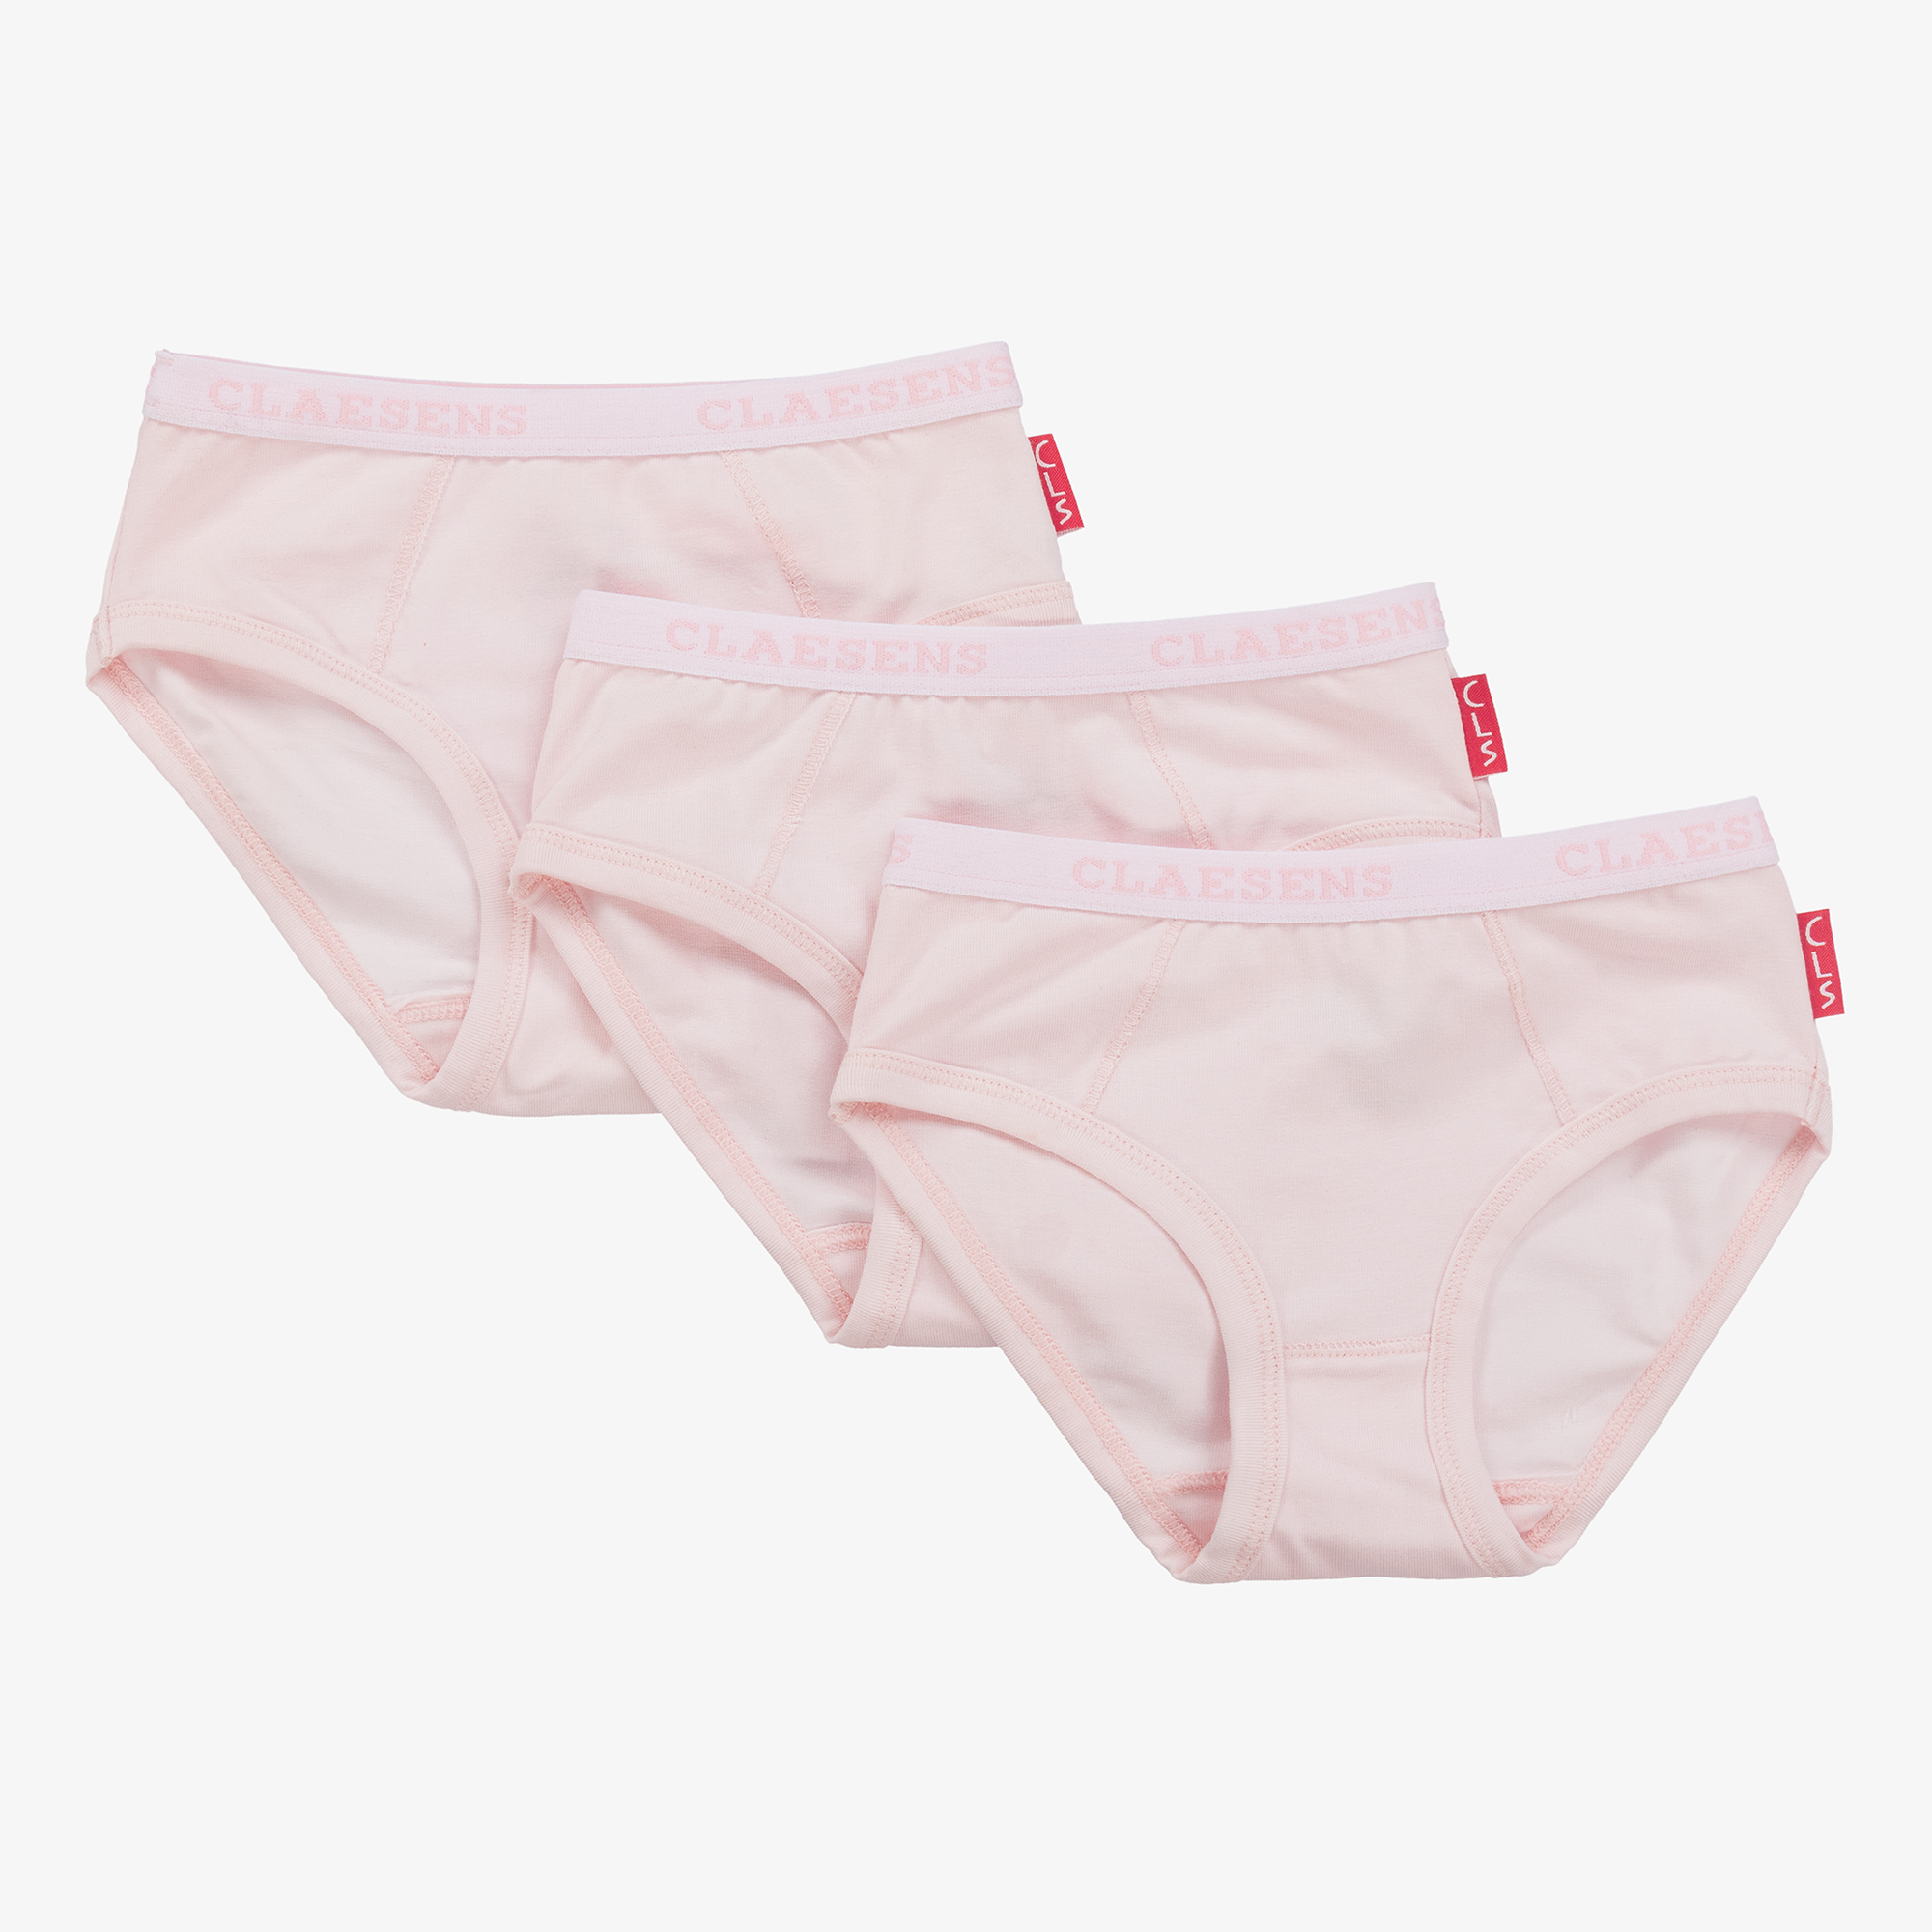 Vintage Underwear Toddler Girls Pink Puppies Panties 100% Cotton Unused  Underpants 4-5 Years -  Norway